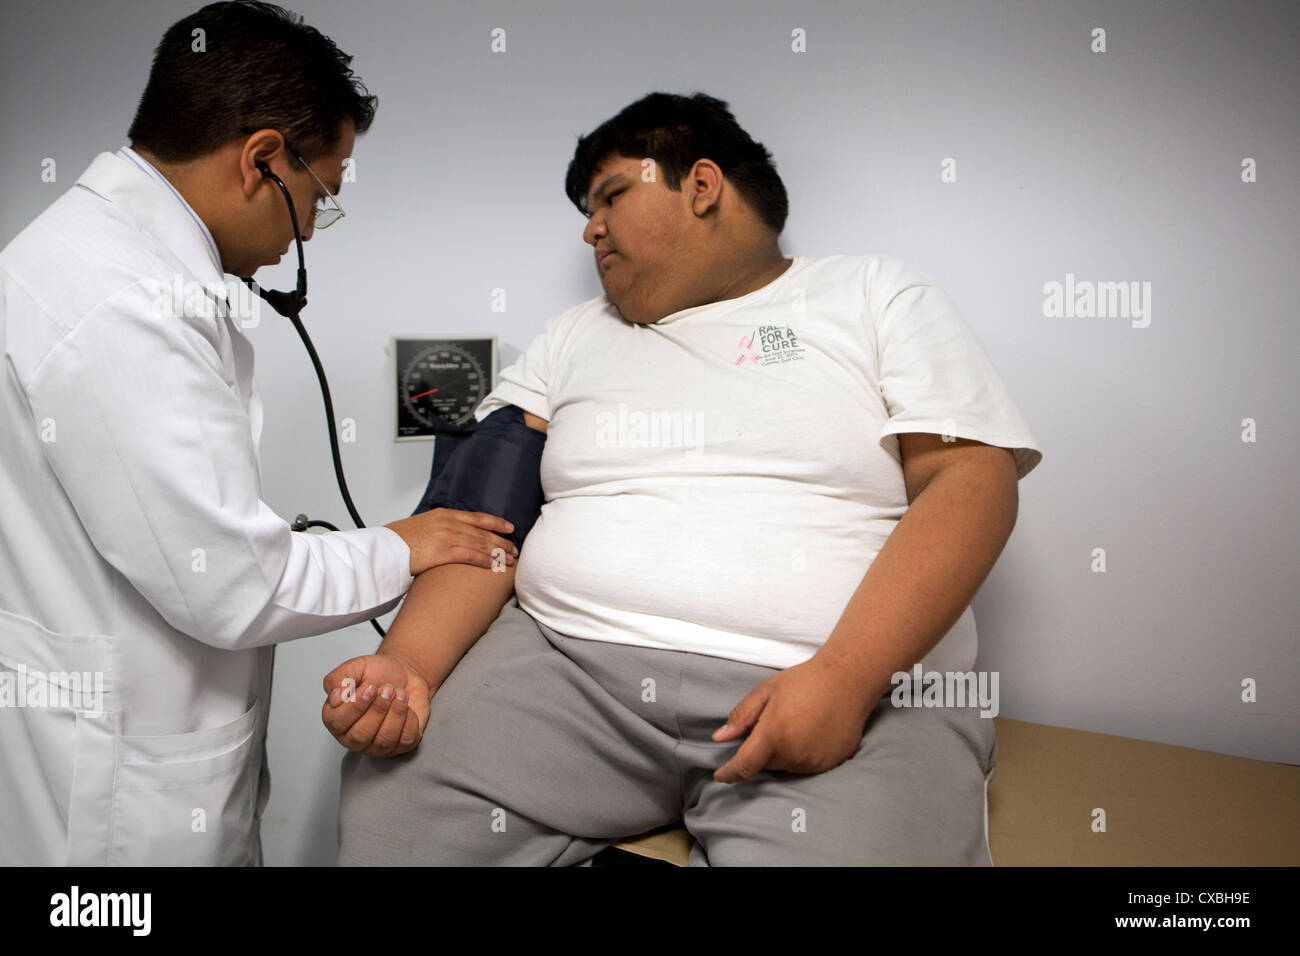 Infanzia obesità patologica in Messico Foto Stock